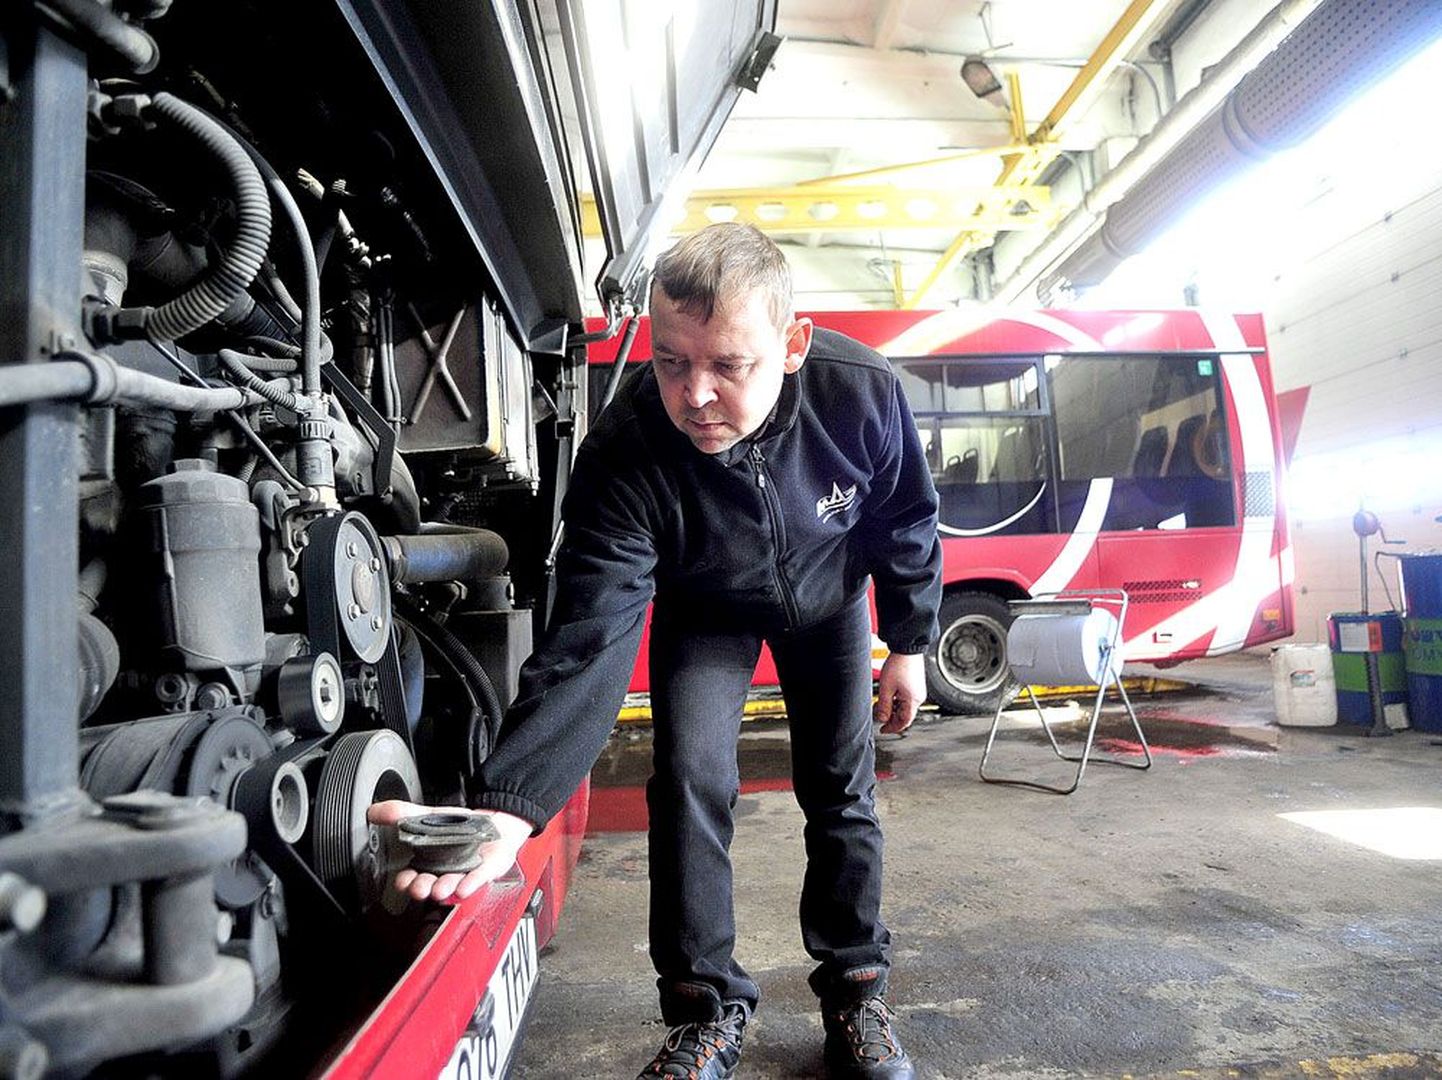 Maz Eesti direktor Heikki Tälli näitab midibussi mootoripatja, mis ei suuda Mercedese mootori tekitatavat vibratsiooni küllaldaselt summutada.